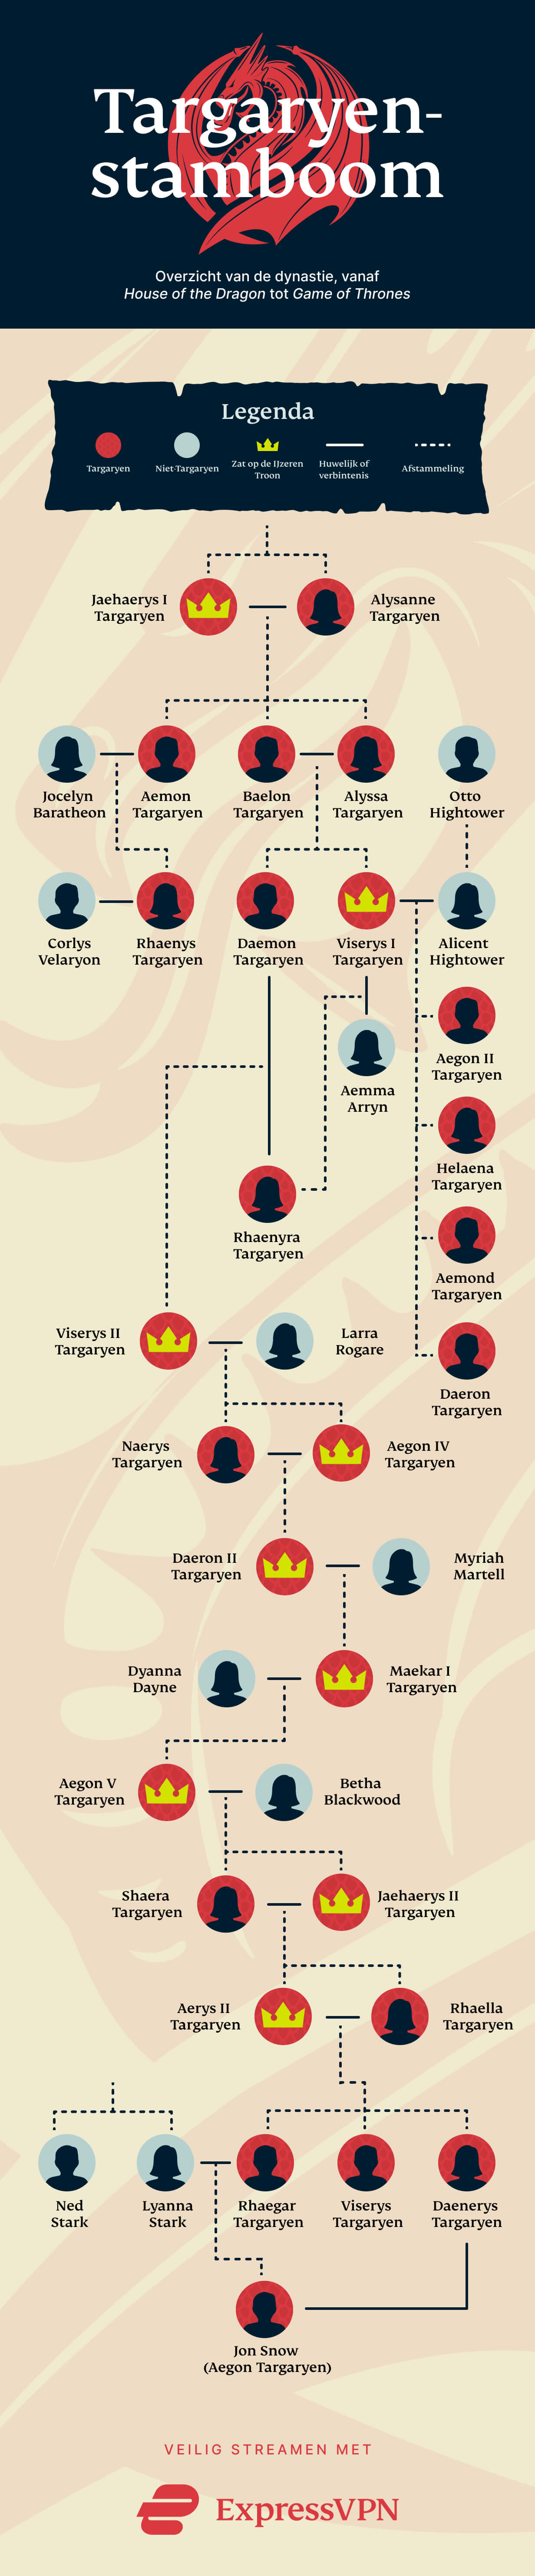 De Targaryen-stamboom uitgelegd: van 'House of the Dragon' tot 'Game of Thrones'